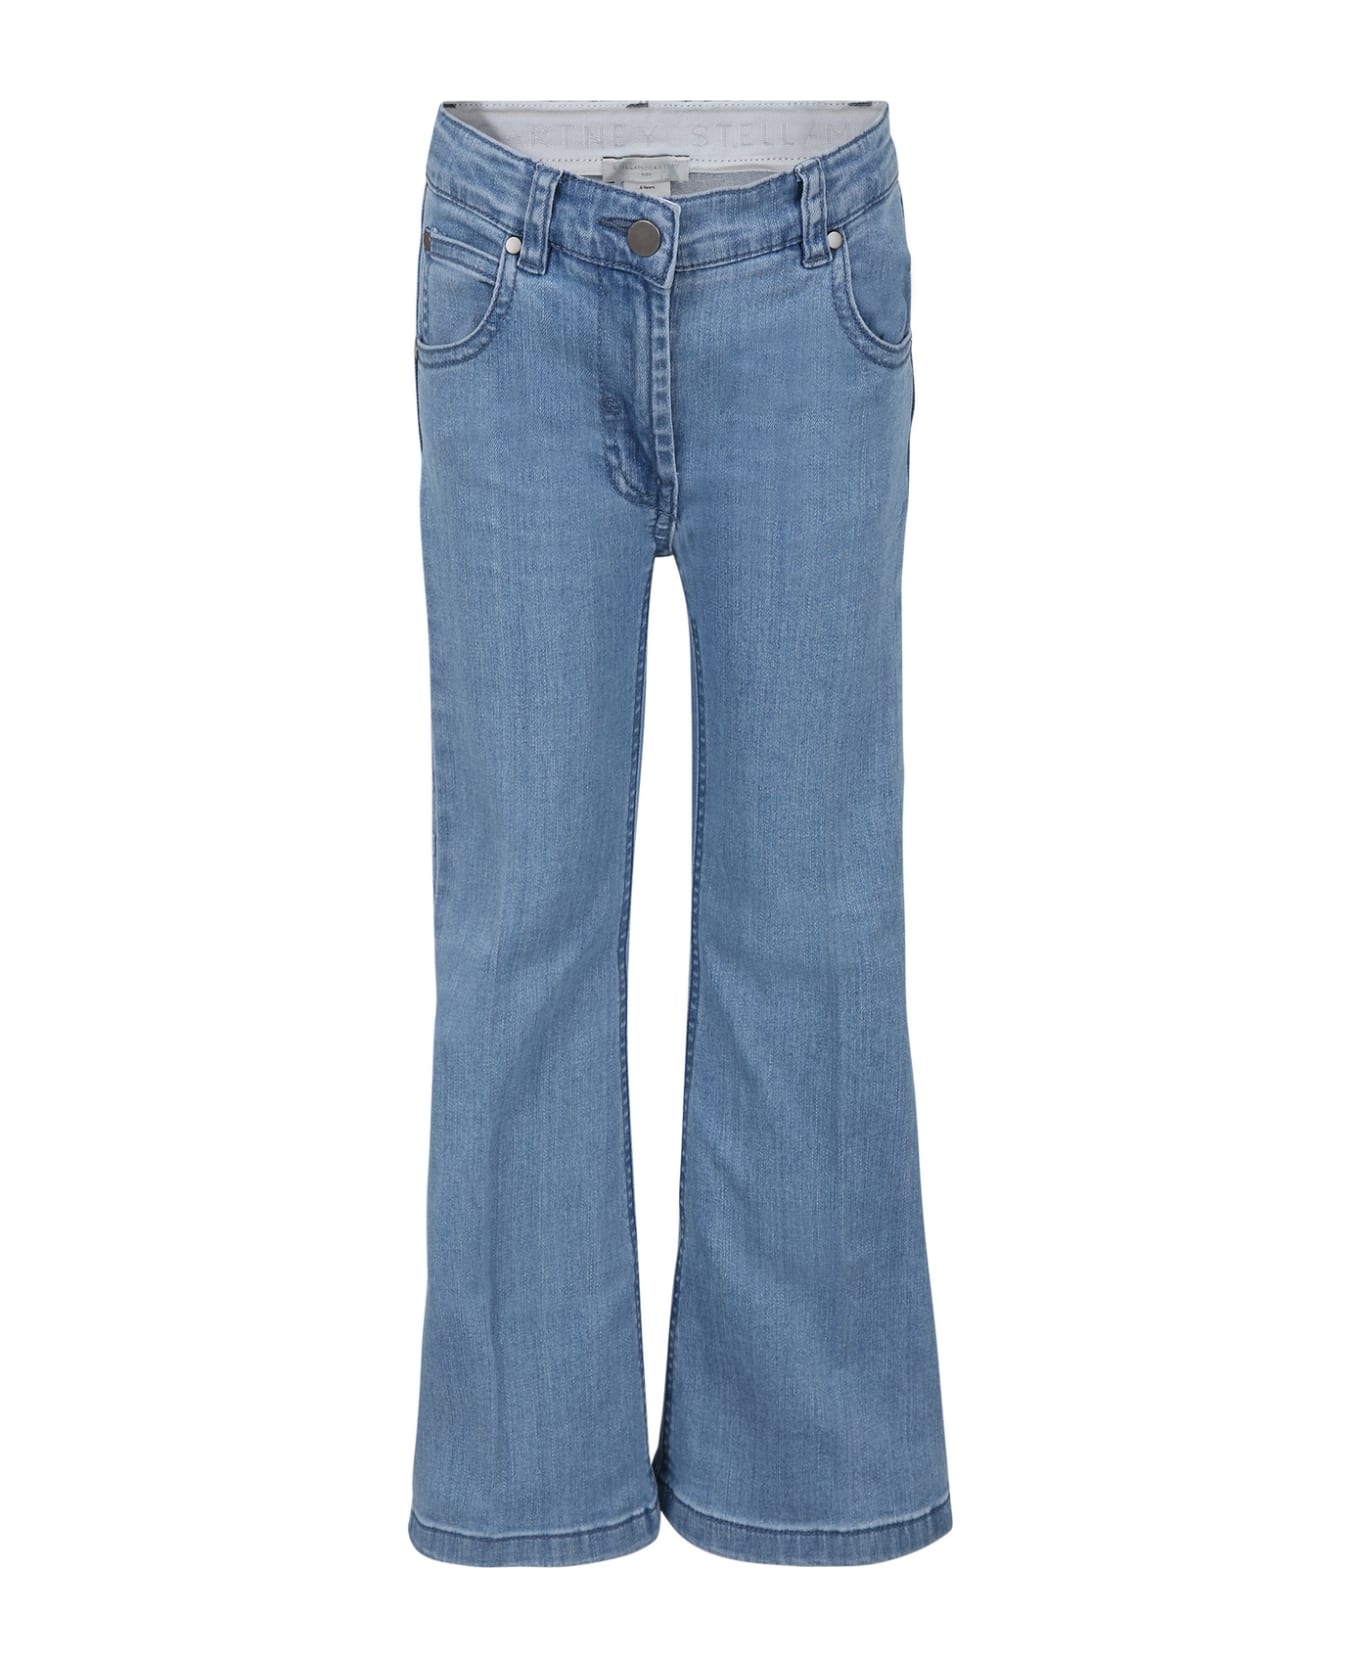 Stella McCartney Kids Light Blue Jeans For Girl With Logo - Denim ボトムス